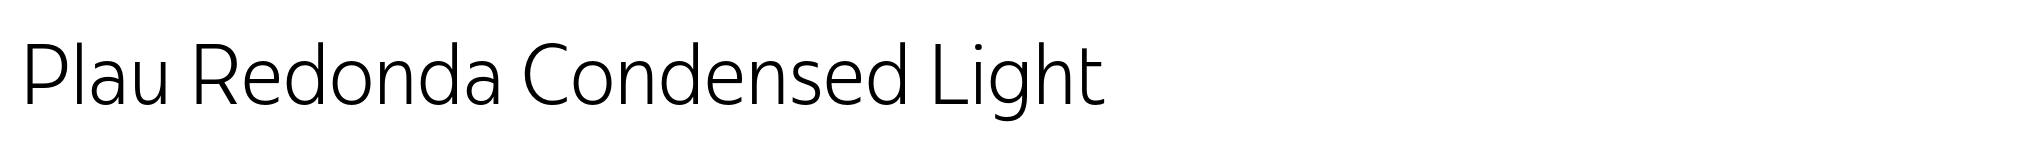 Plau Redonda Condensed Light image